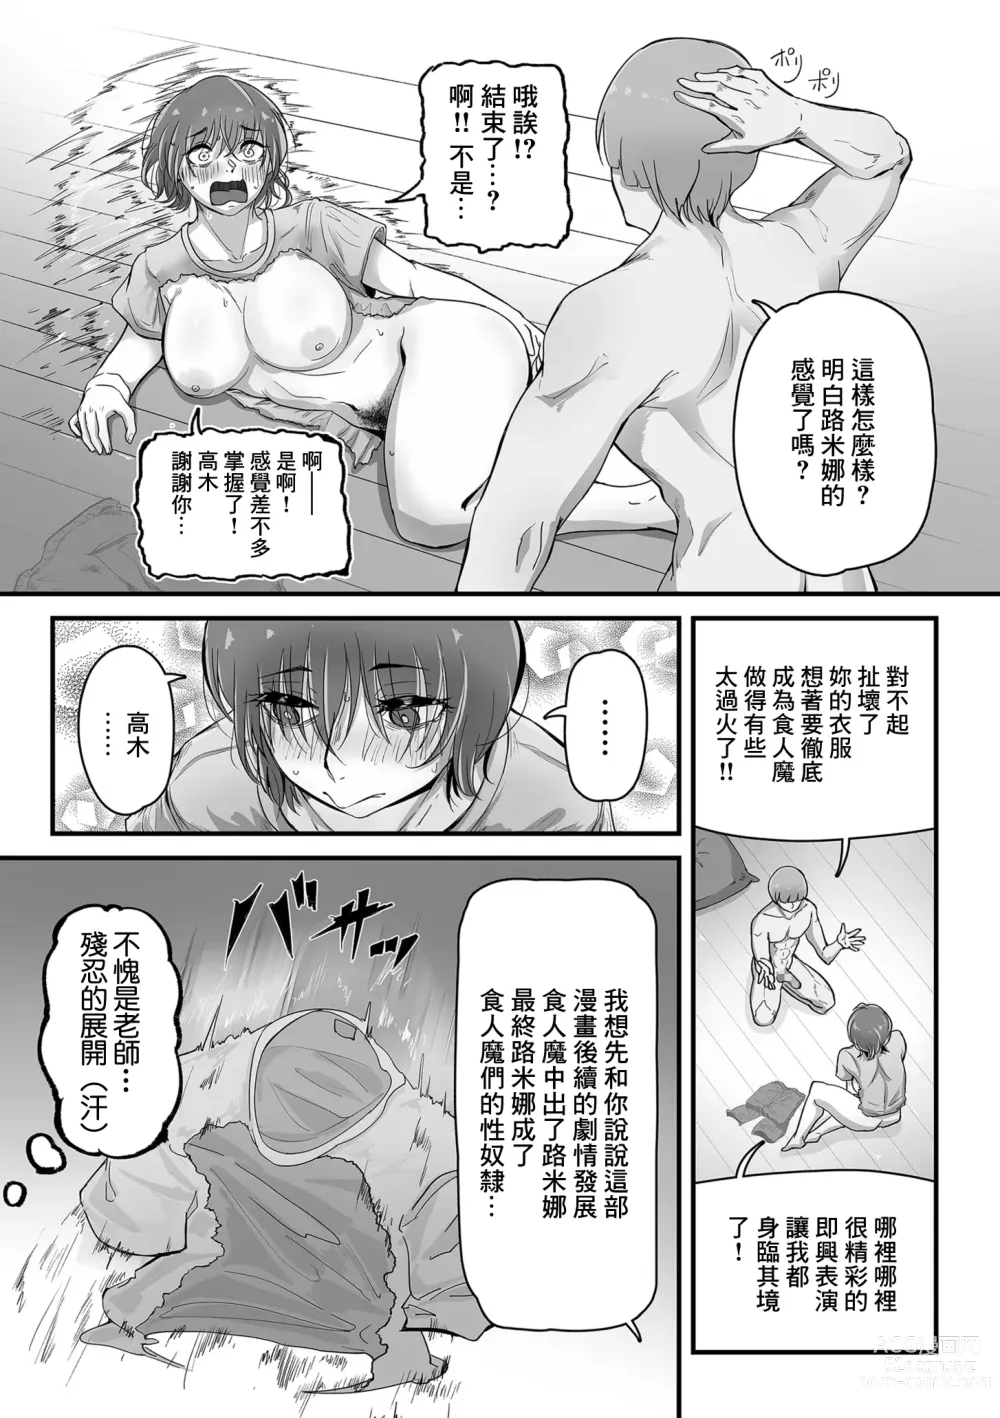 Page 15 of manga 要老師的巨根資料收集!